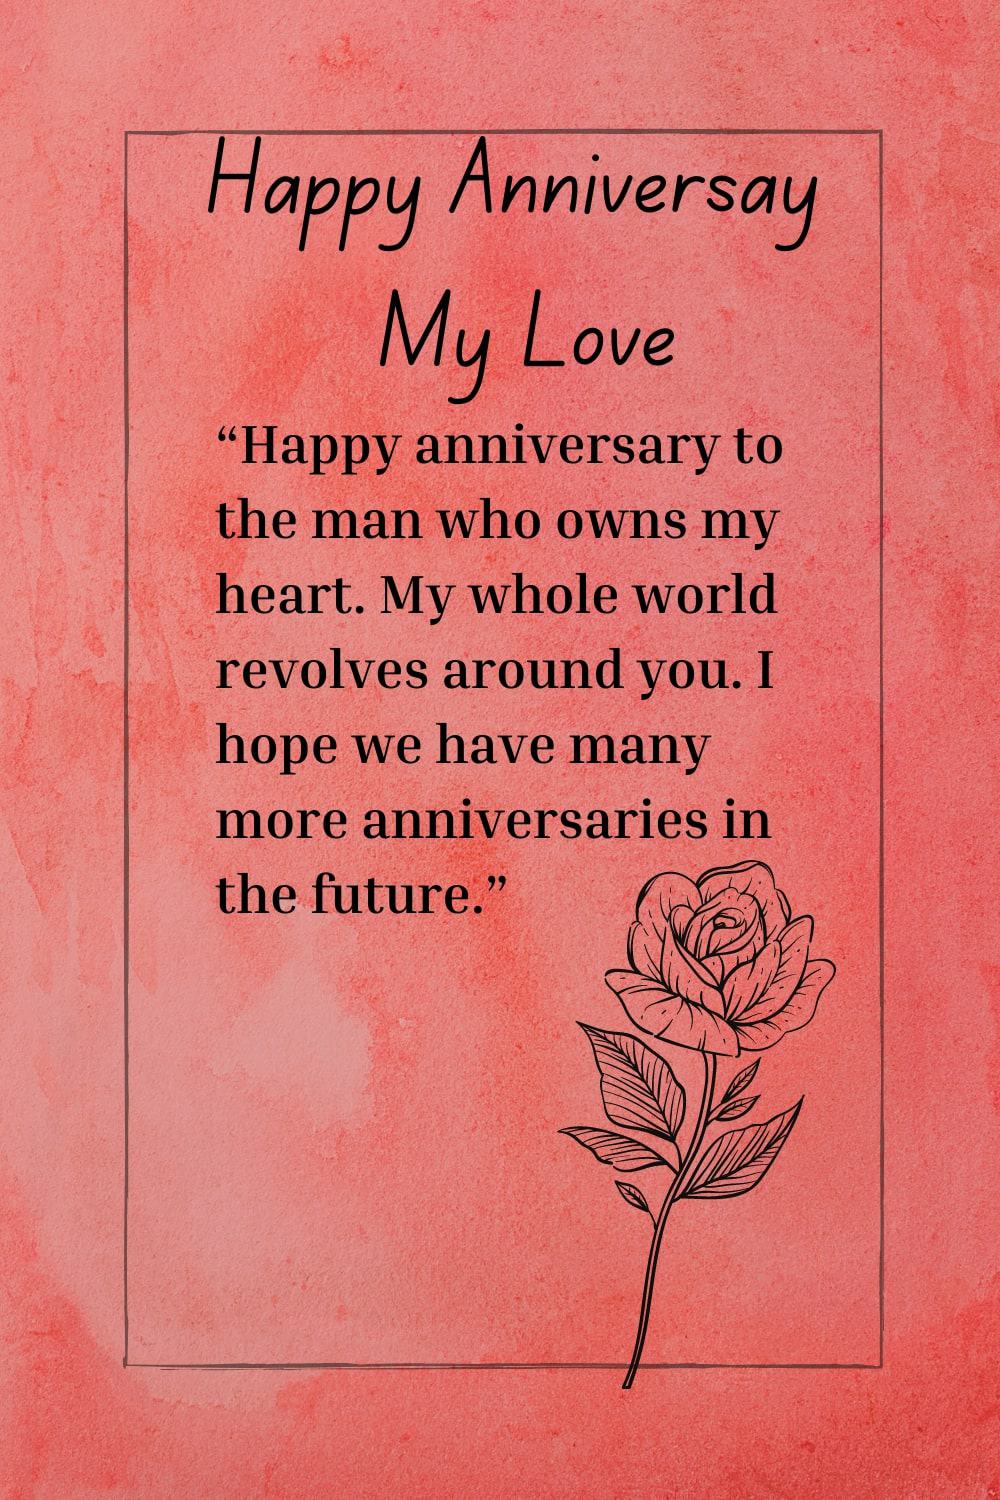 Happy anniversary wishes for boyfriend